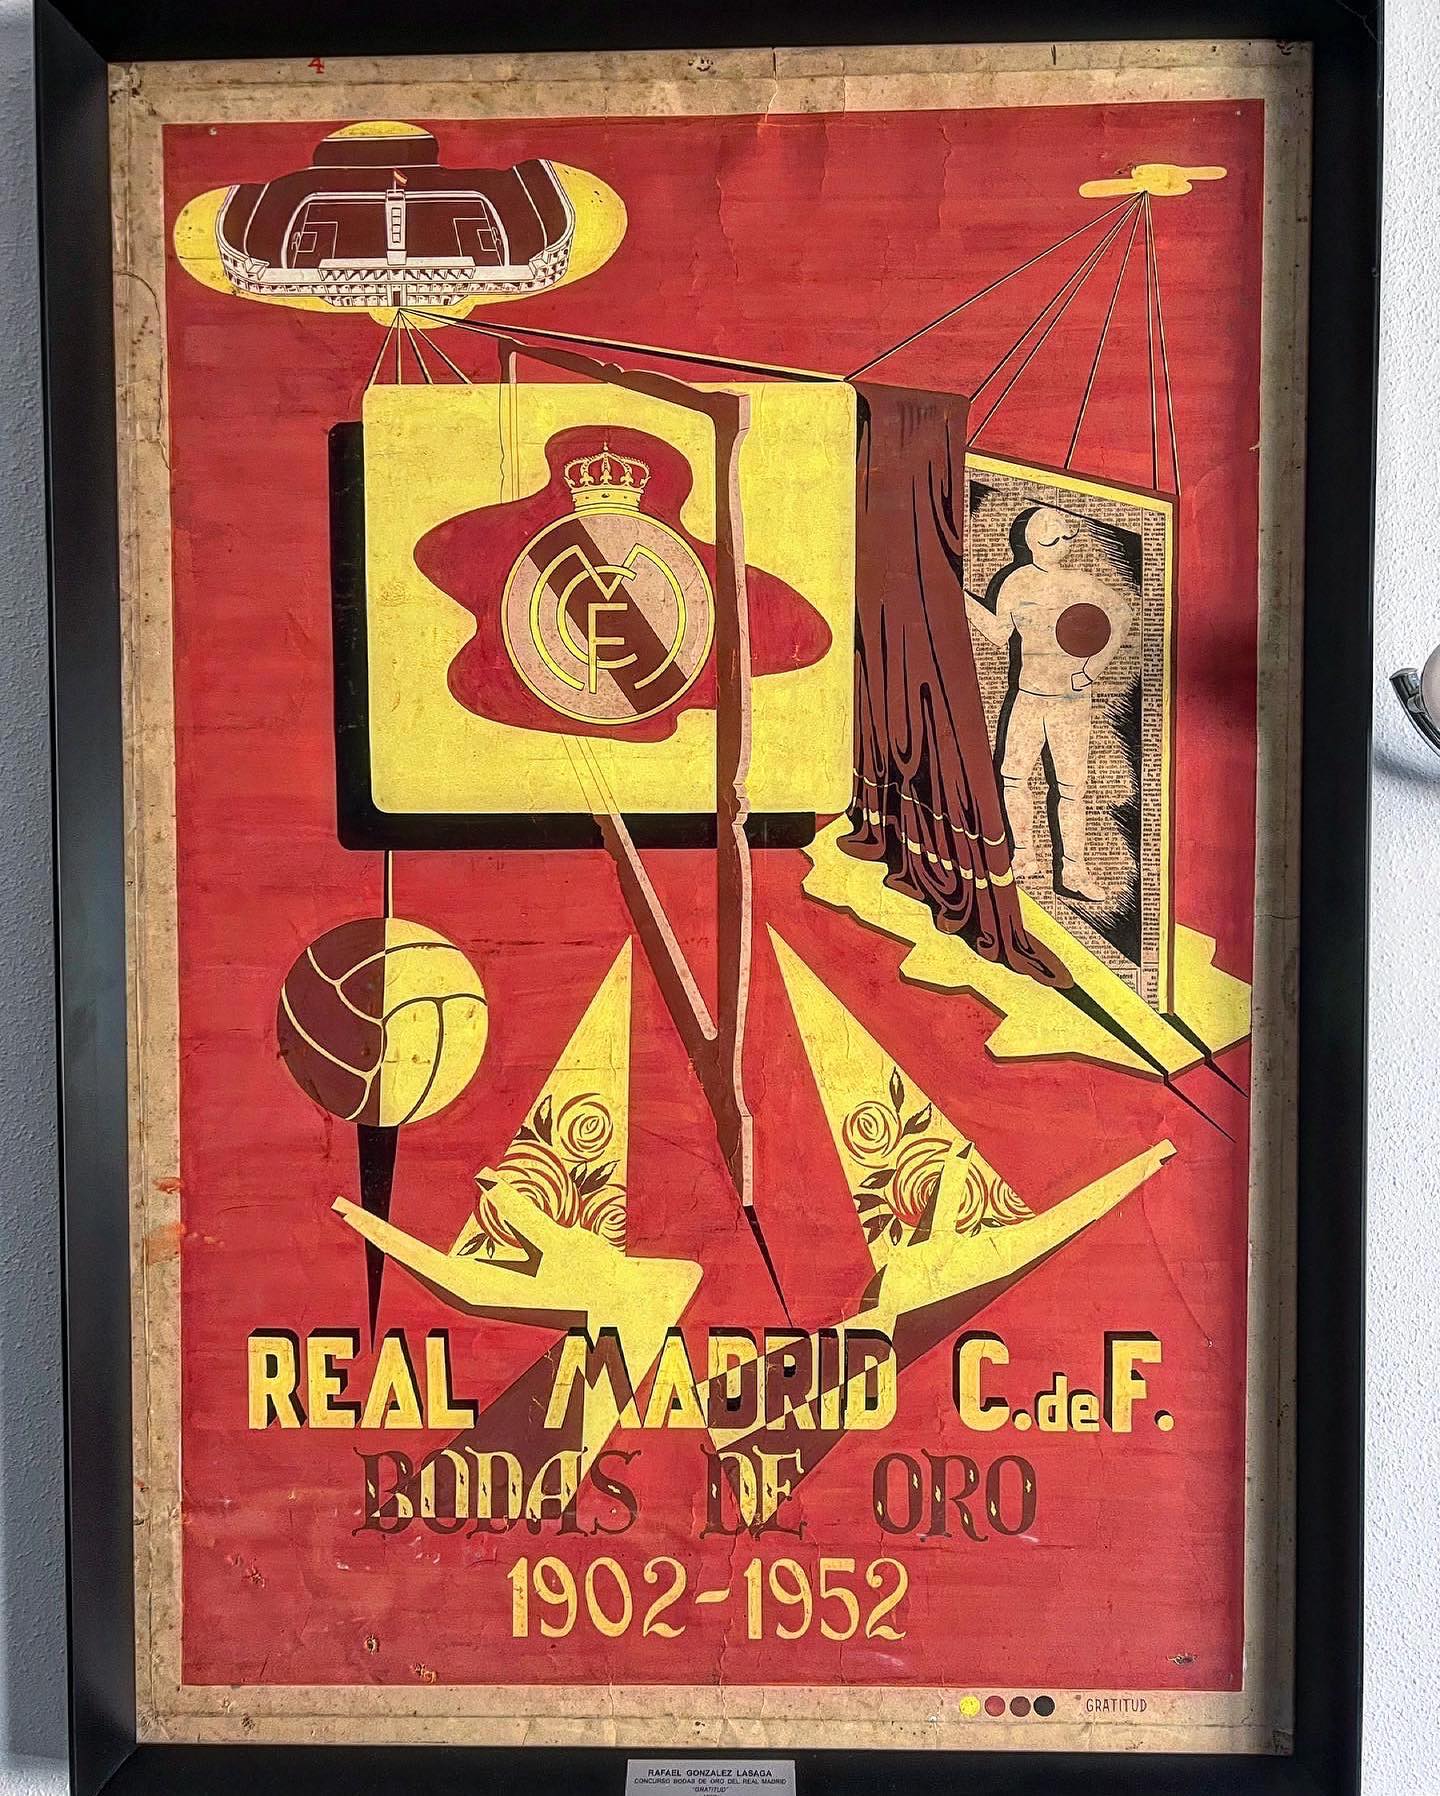 Cartel Bodas de Oro del Real Madrid, participante en el concurso 1952